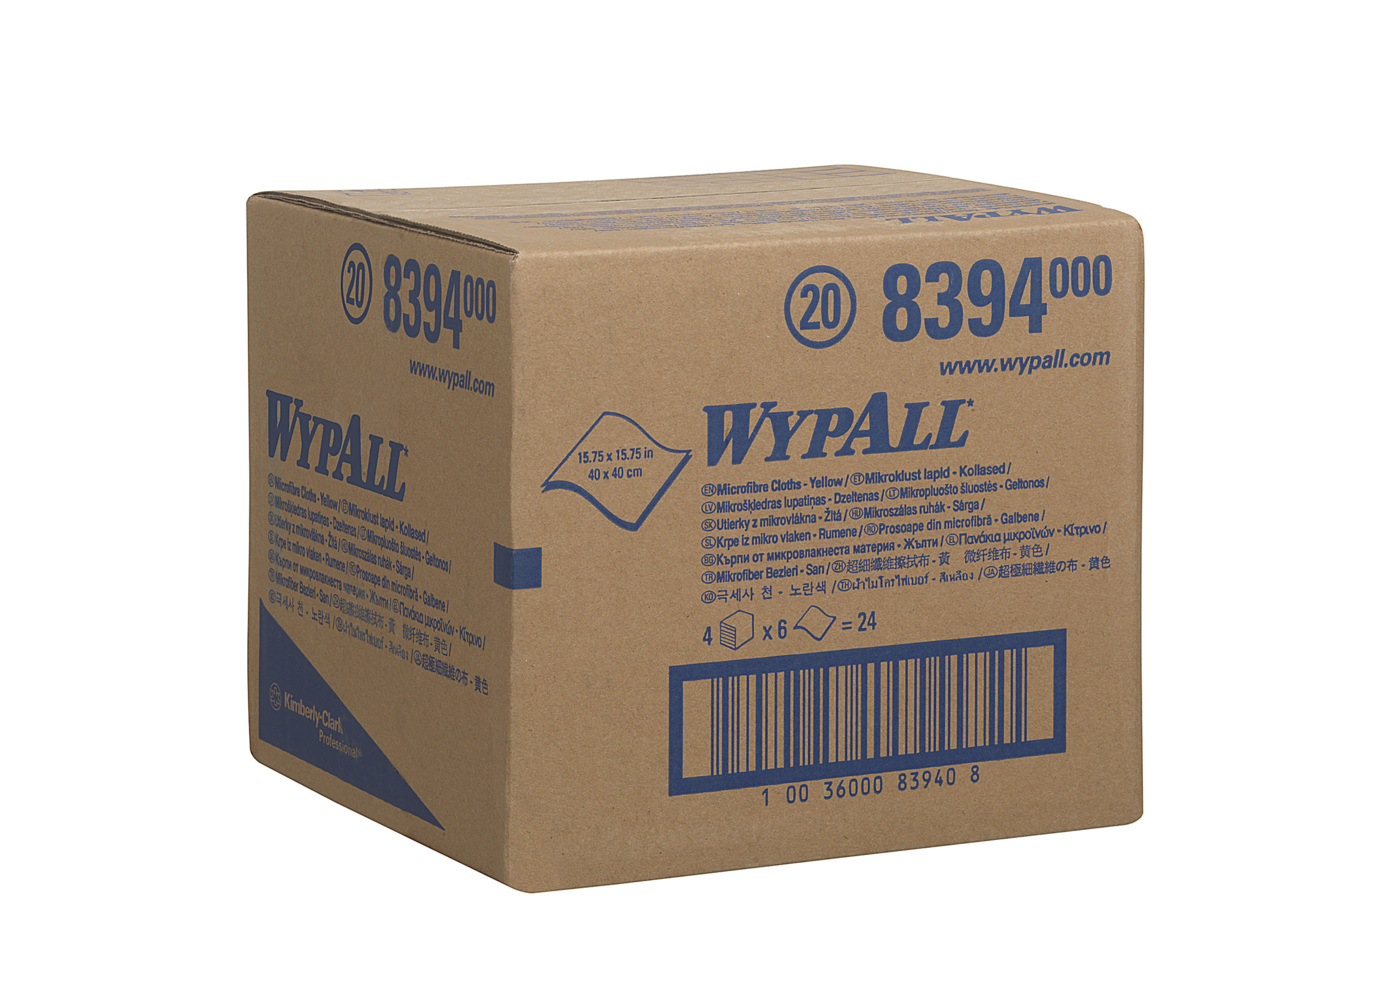 Chiffons en microfibres WypAll® 8394 - 4 paquets de 6 chiffons jaunes de 40 x 40 cm (24 au total) - 8394